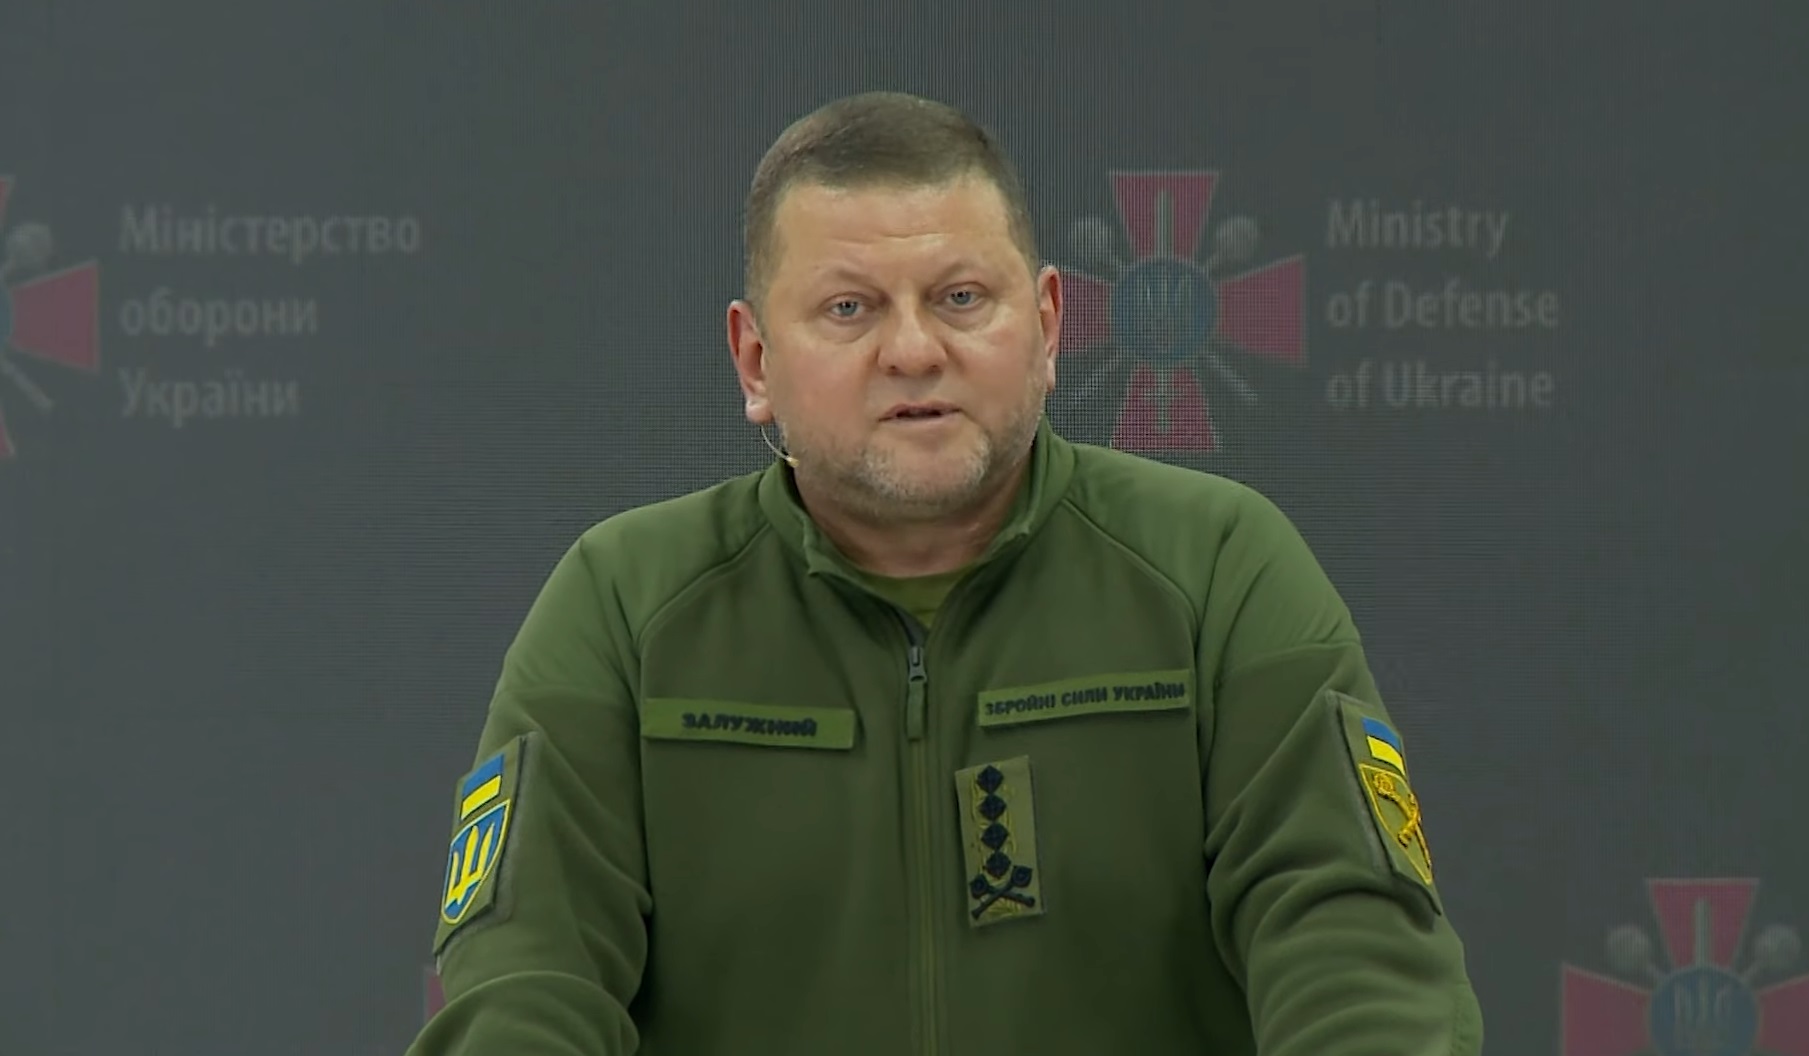 Ukraine’s Chief of the Armed Forces, Valeriy Zaluzhnyi